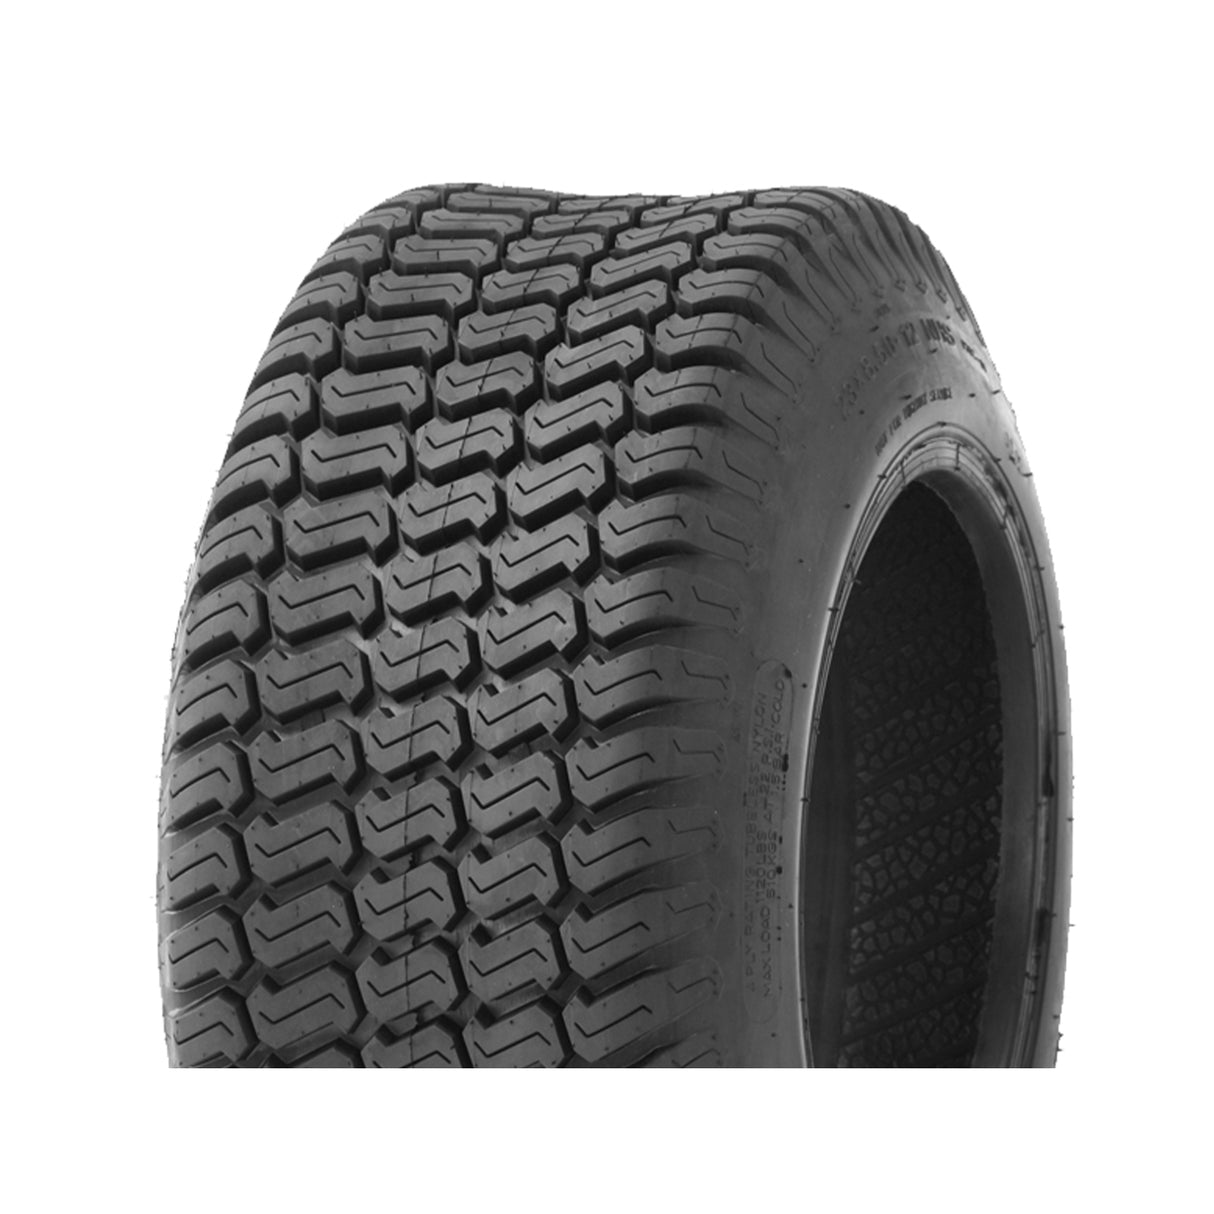 23x8.50-12 P332 8 PLY Bushmate Reinforced Turf Mower Tyre - GEO Tyres Online